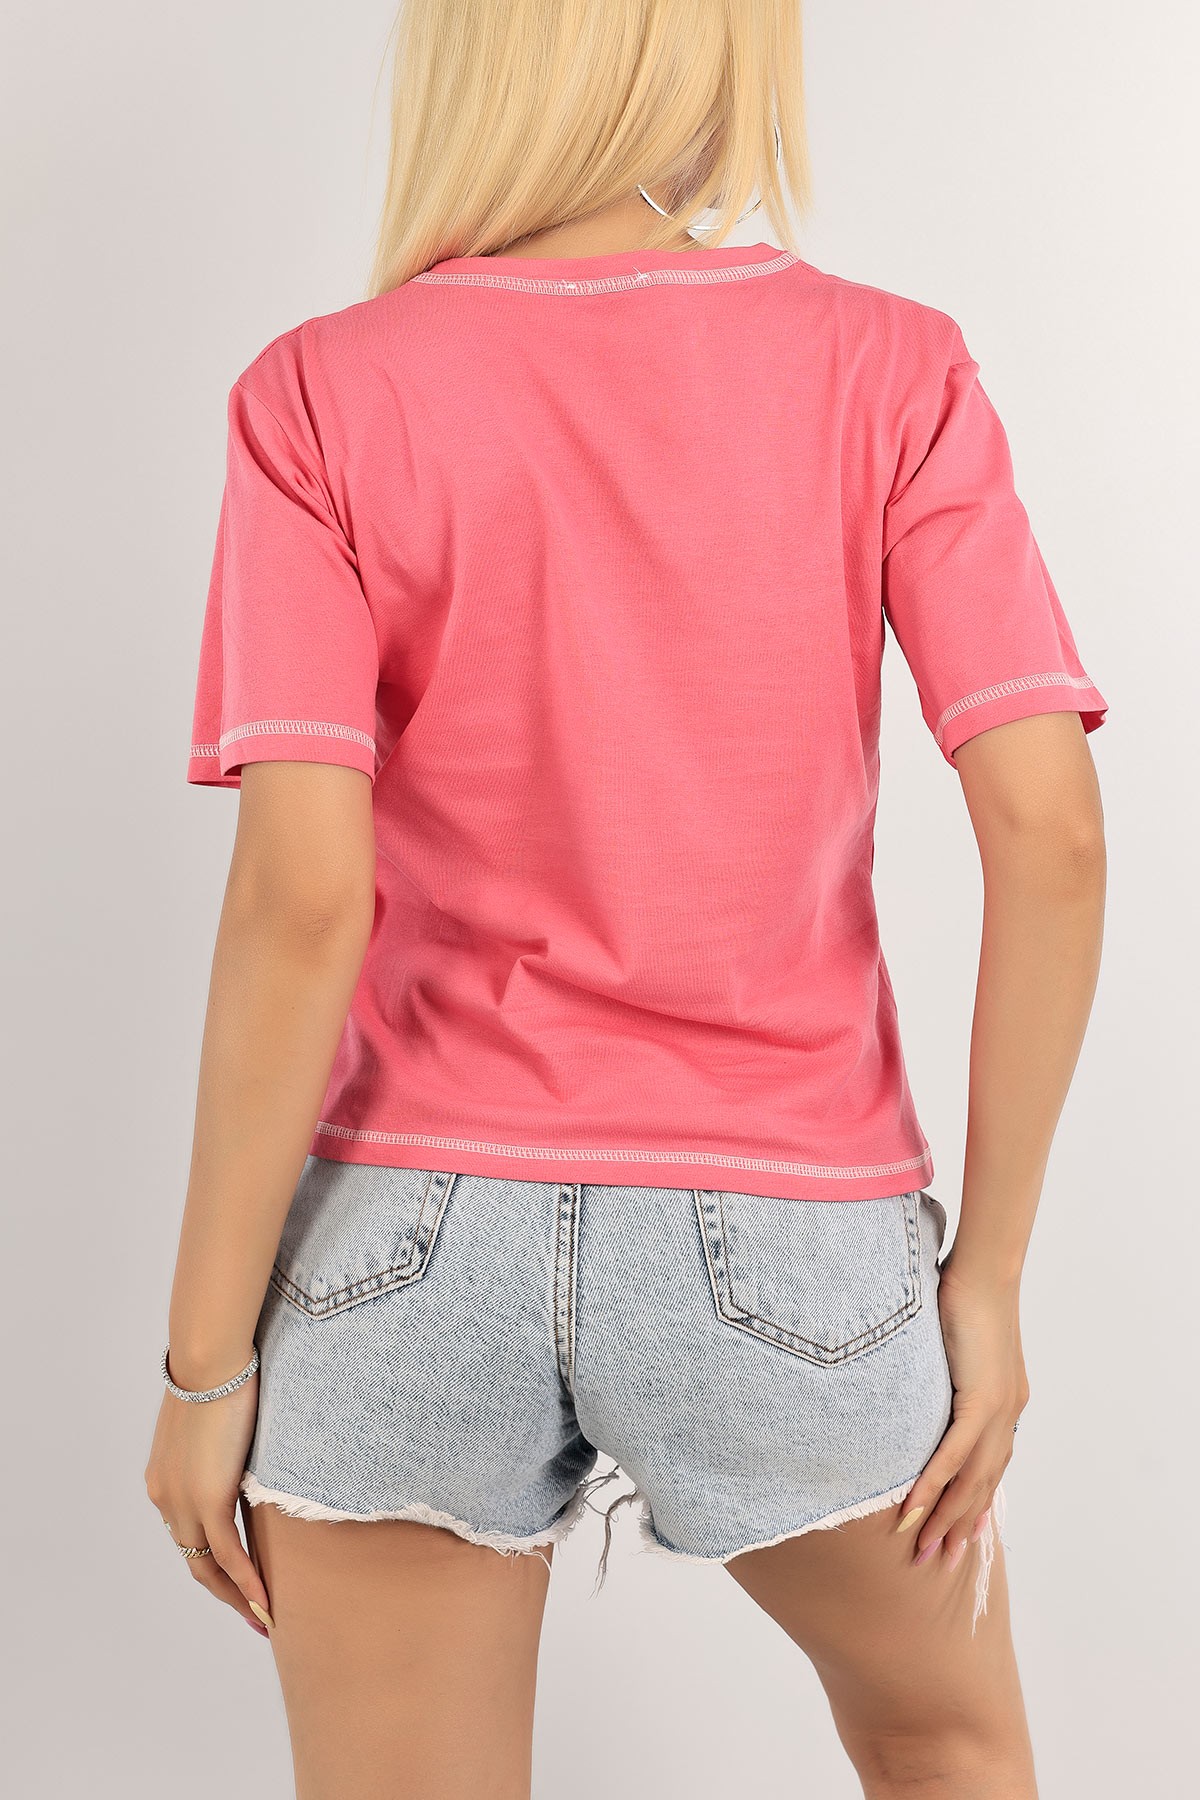 Women's pink T-shirt